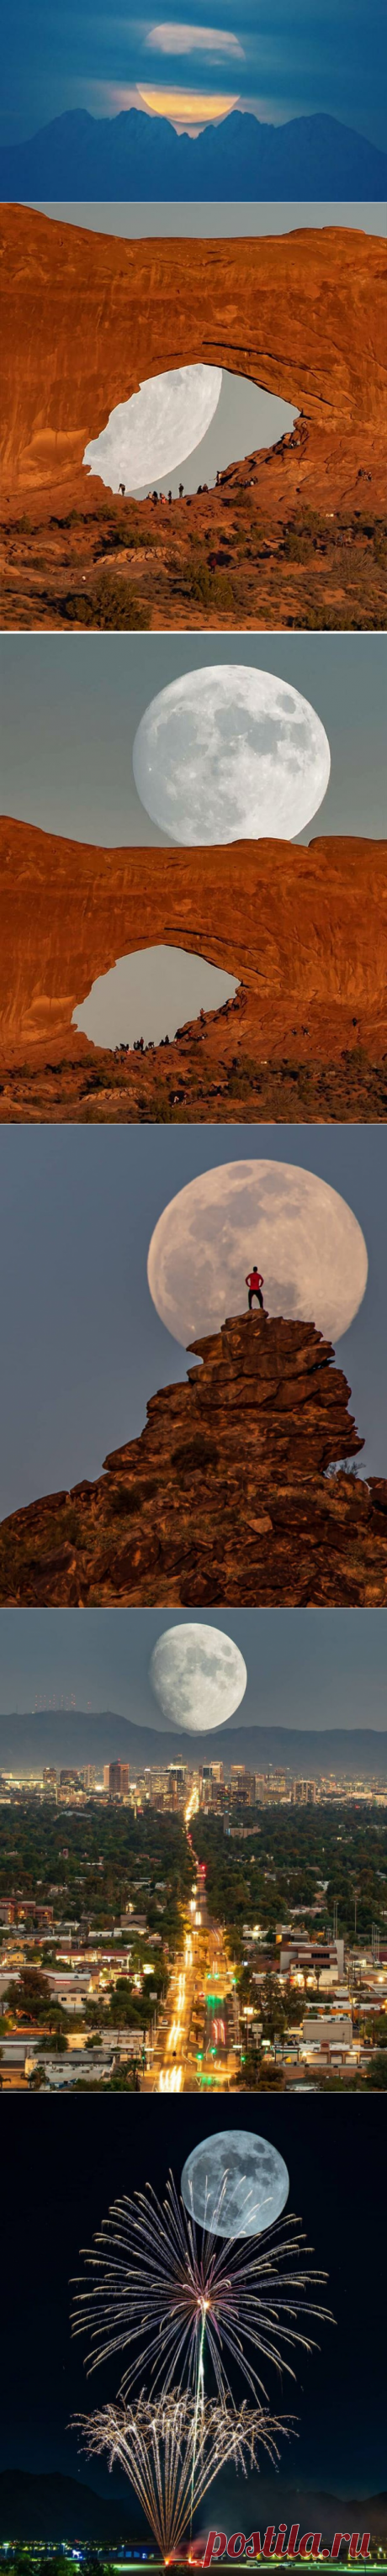 Без фотошопа: фотограф с помощью трюков с камерой делает снимки огромной Луны